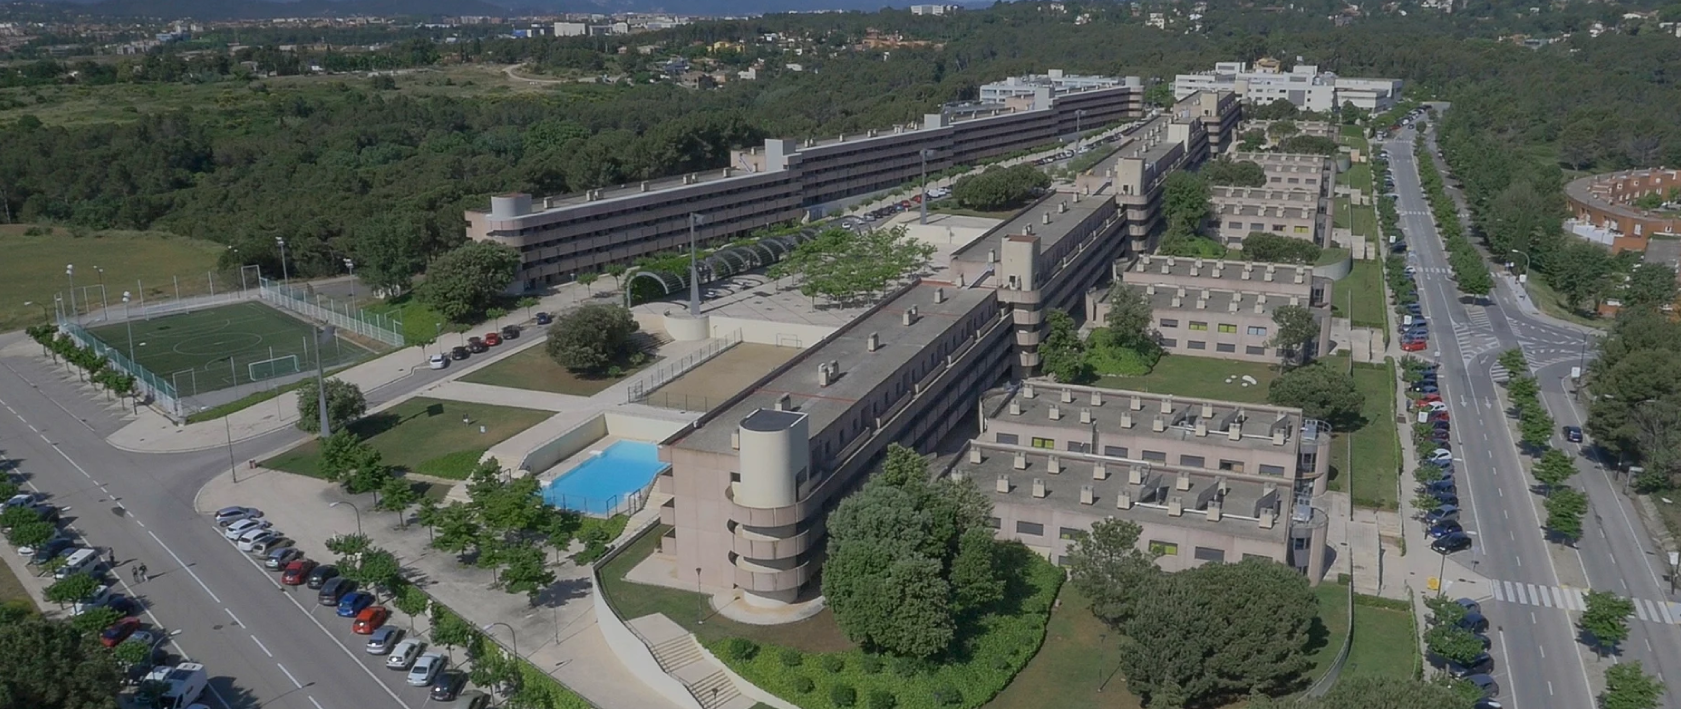 Universidad Autónoma de Barcelona vista aérea